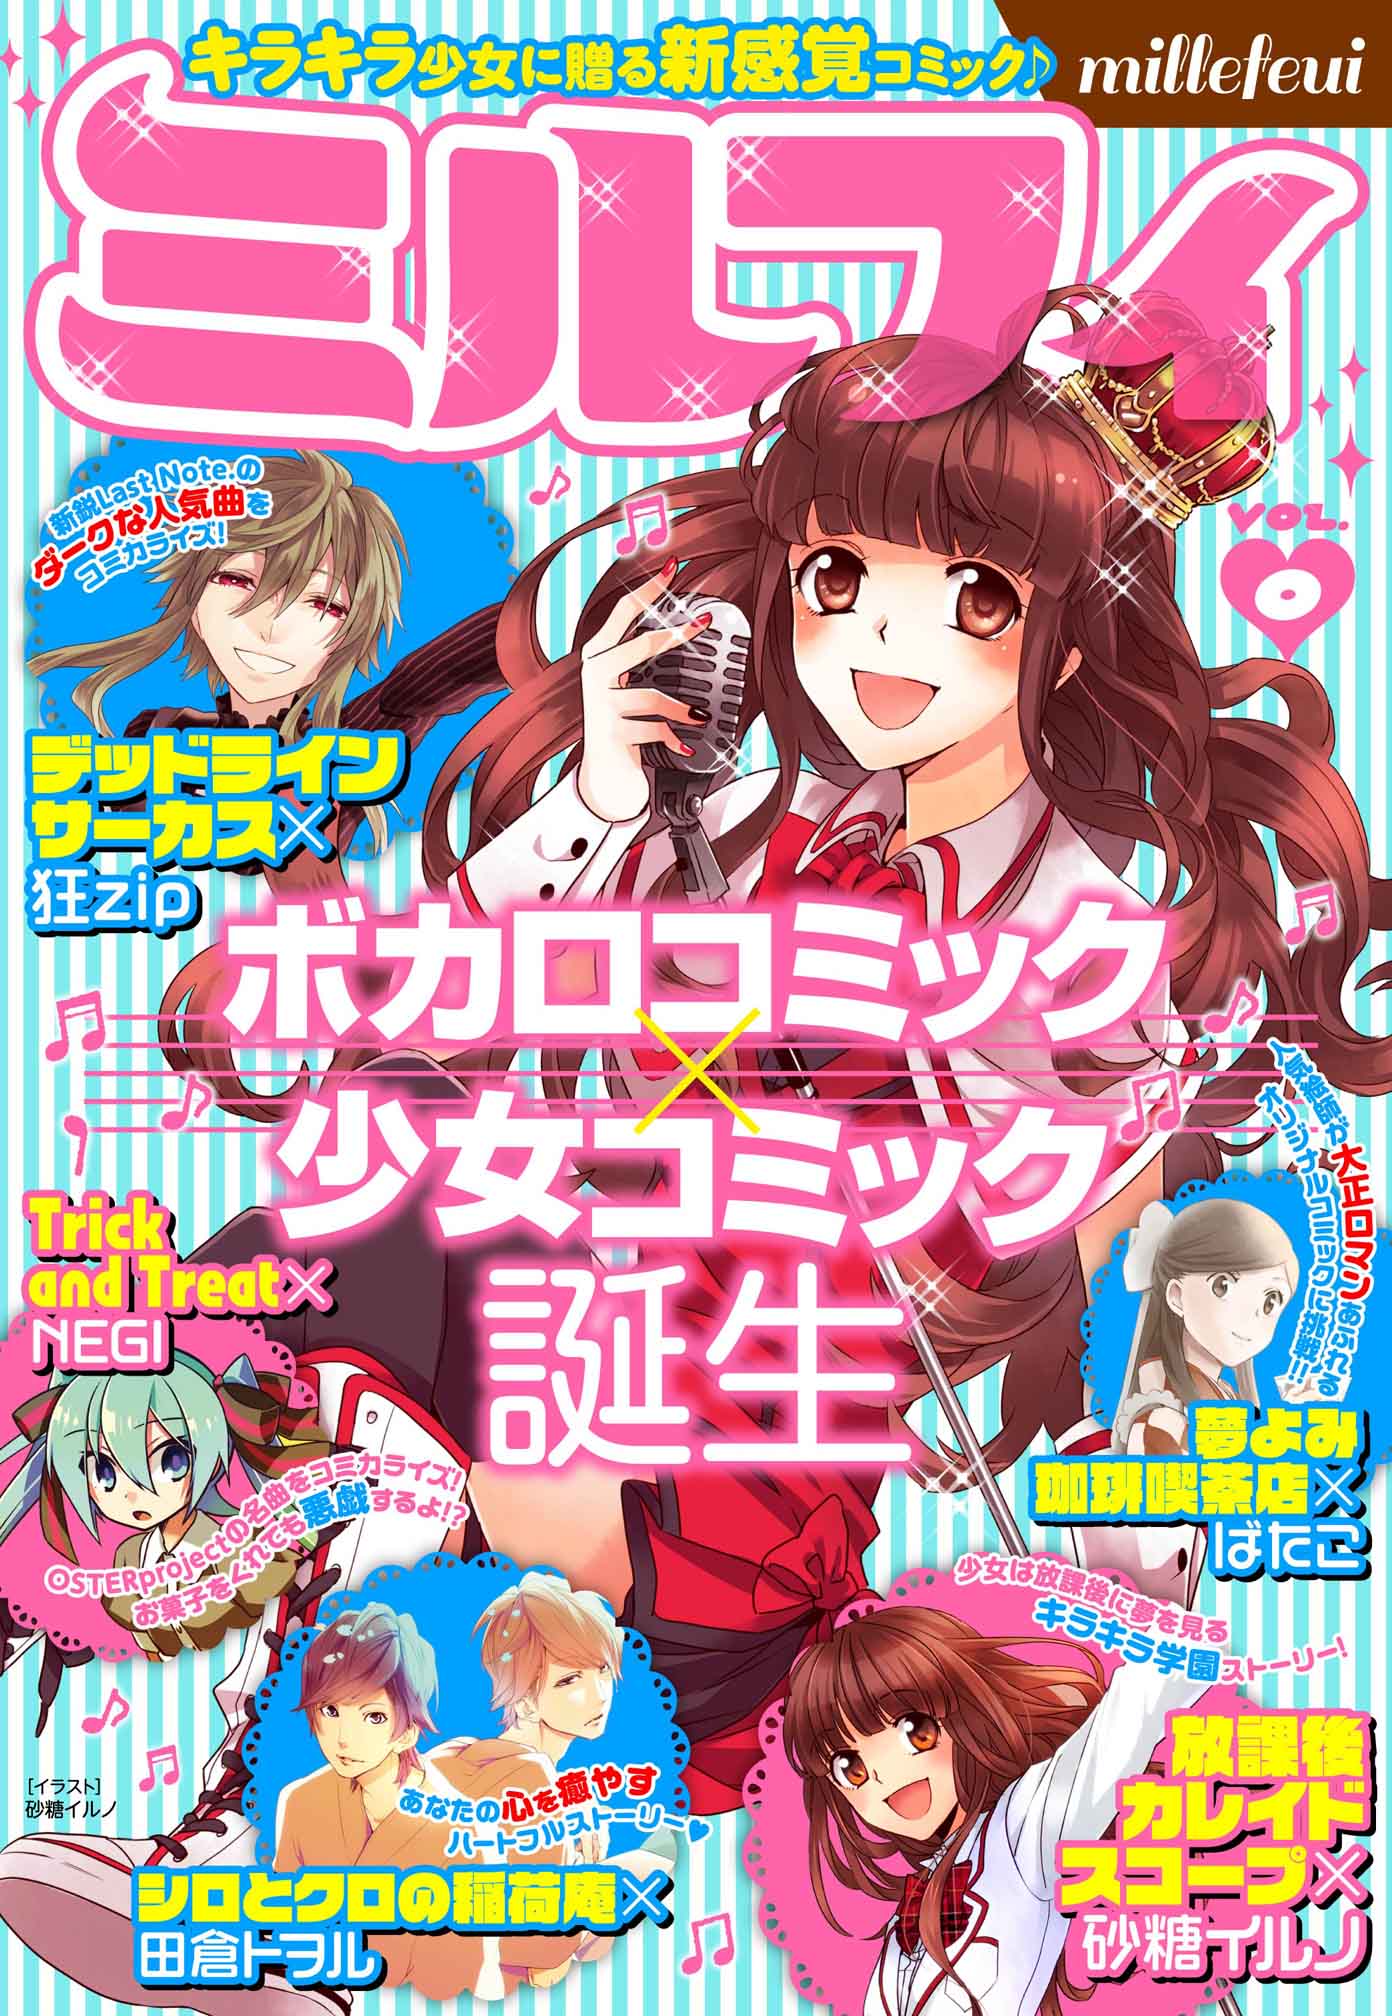 ボカロコミック 少女コミック Web雑誌 ミルフィ 配信スタート 株式会社kadokawaのプレスリリース